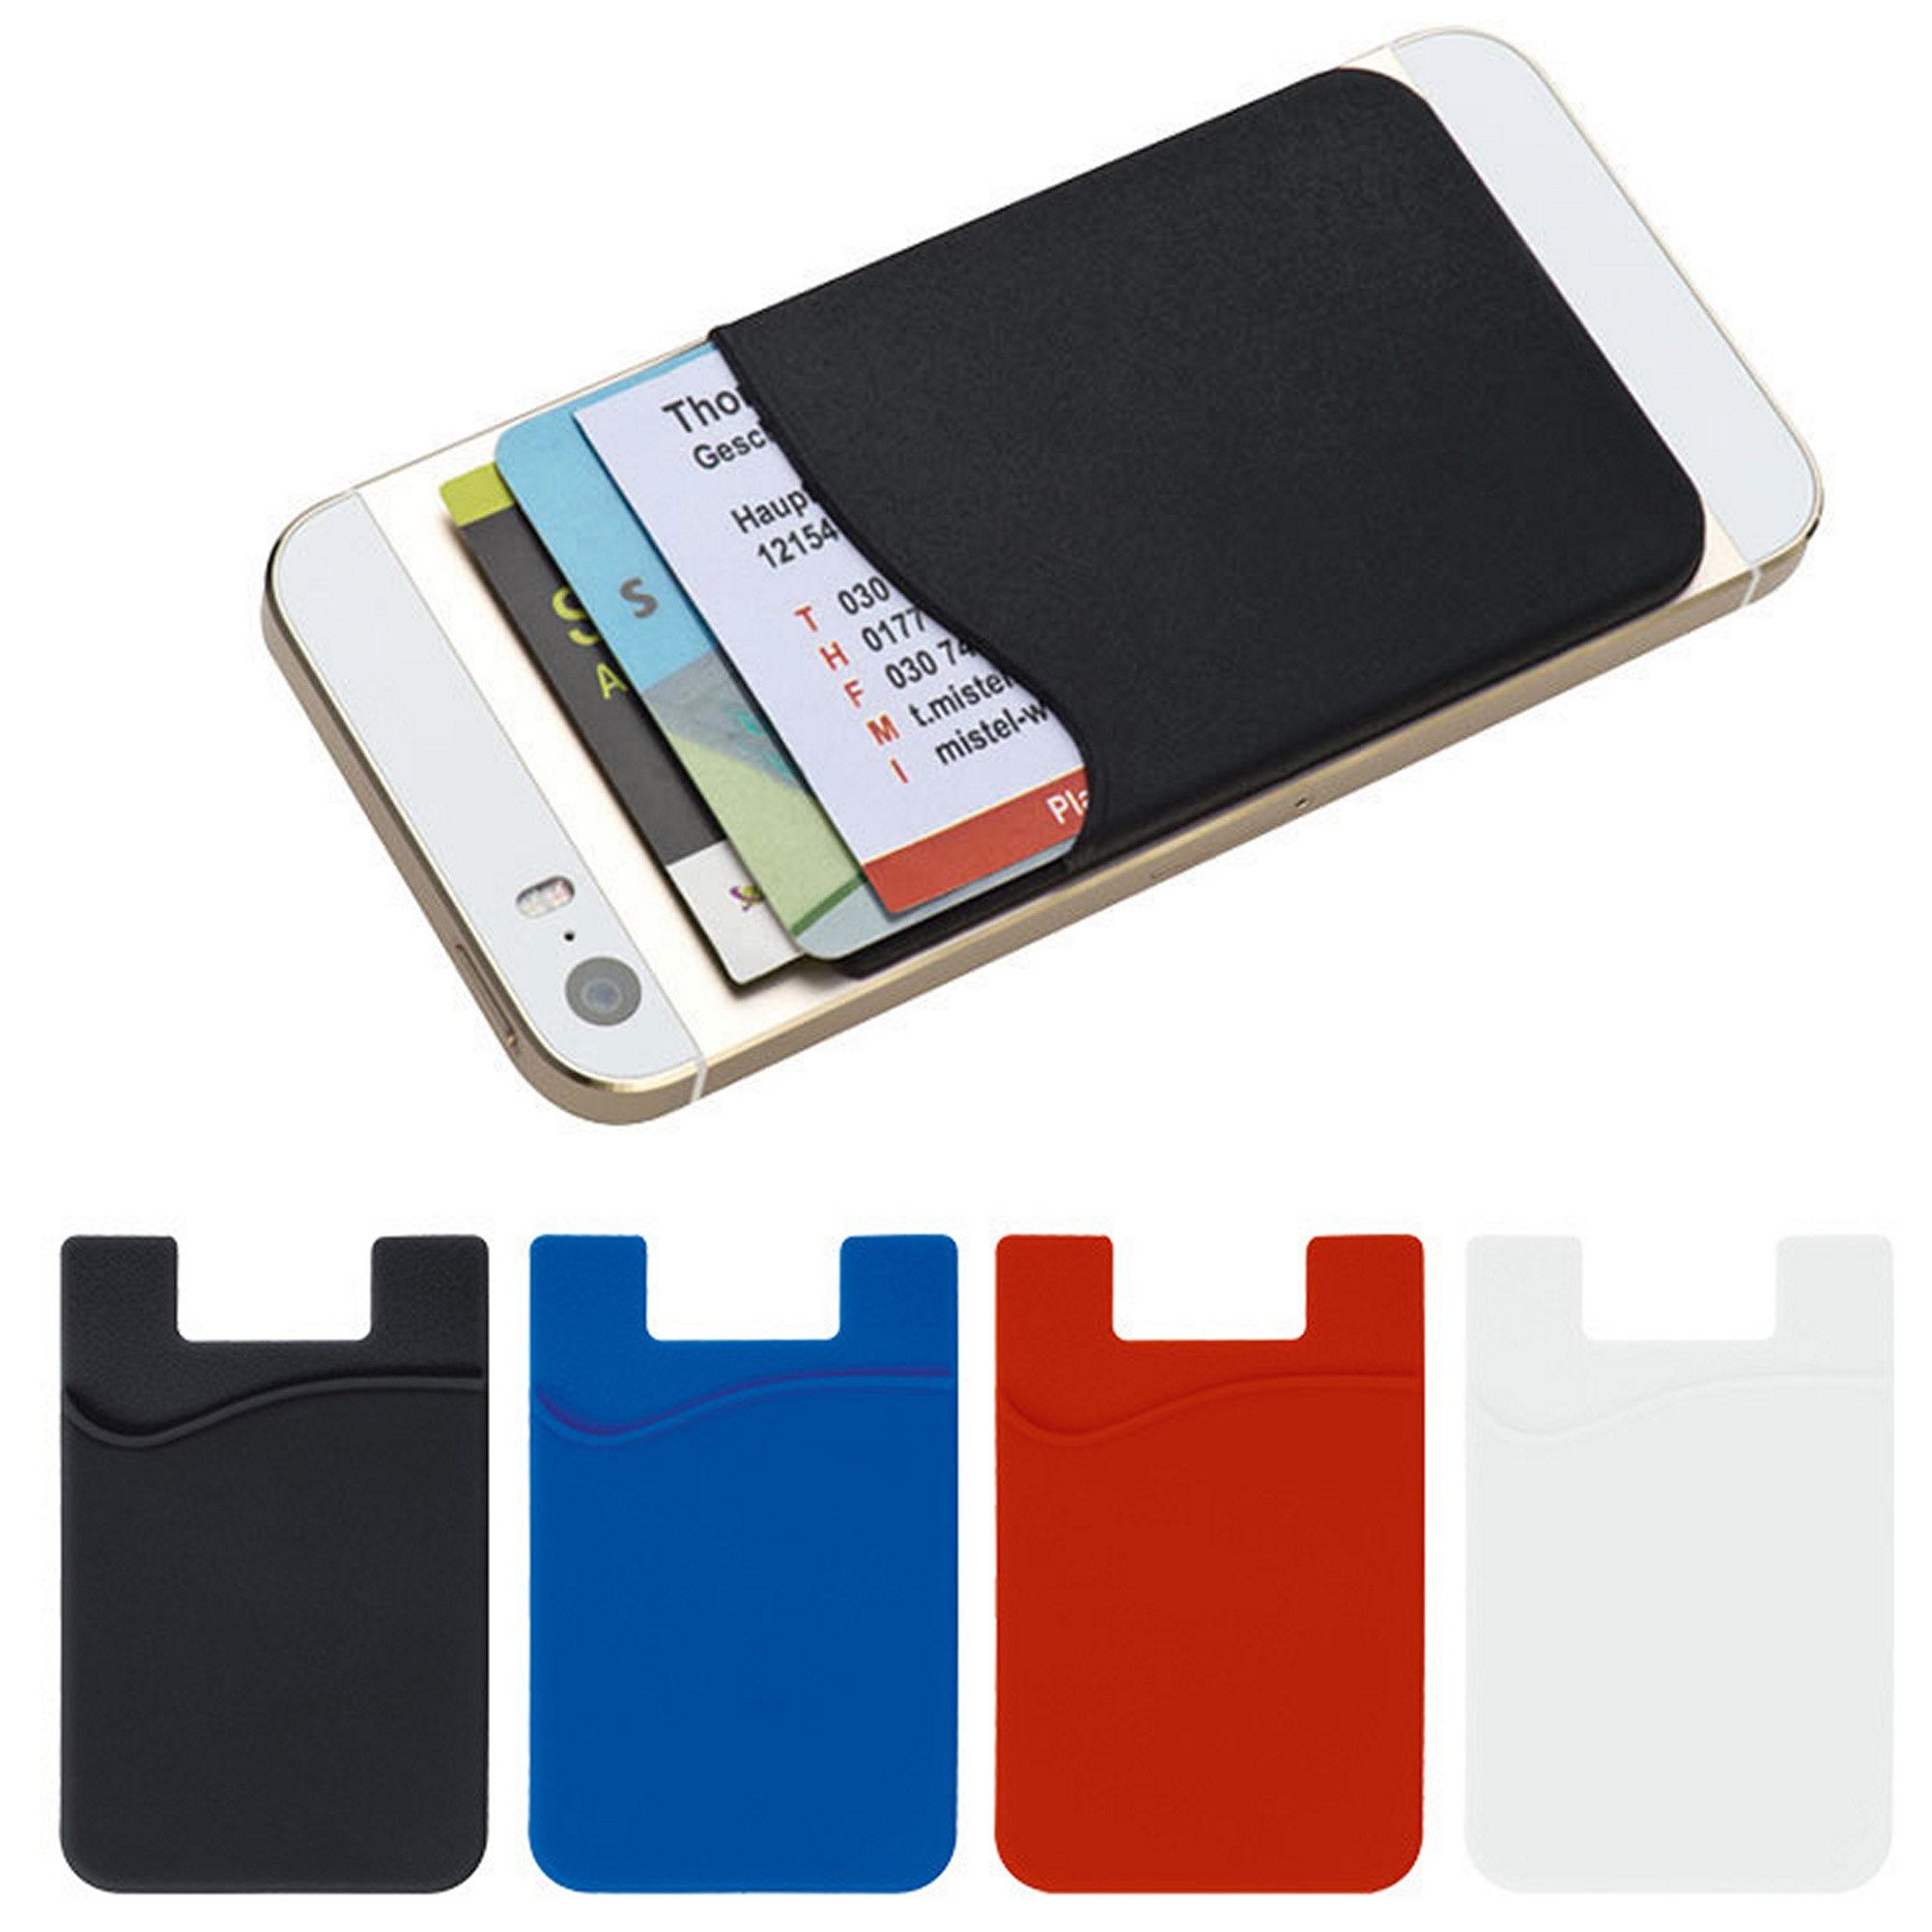 Livepac Office Freizeittasche 4x Smartphone-Tasche / Handy-Tasche / Farbe: je 1x schwarz, blau, rot